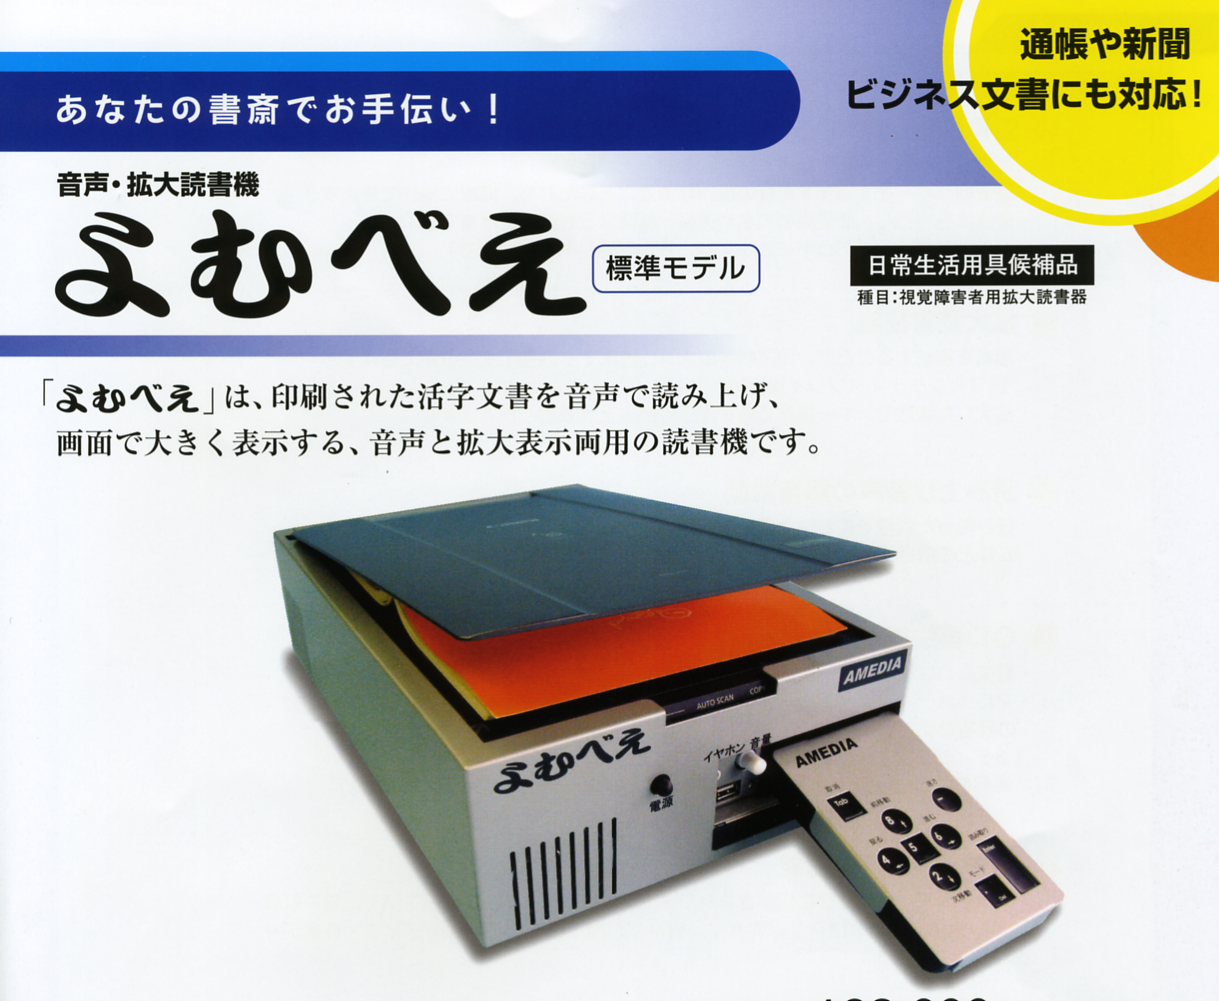 PC/タブレット PC周辺機器 超激安 アメディア 快速よむべえ 一体モデル YK-3100-S 拡大 読書補助 